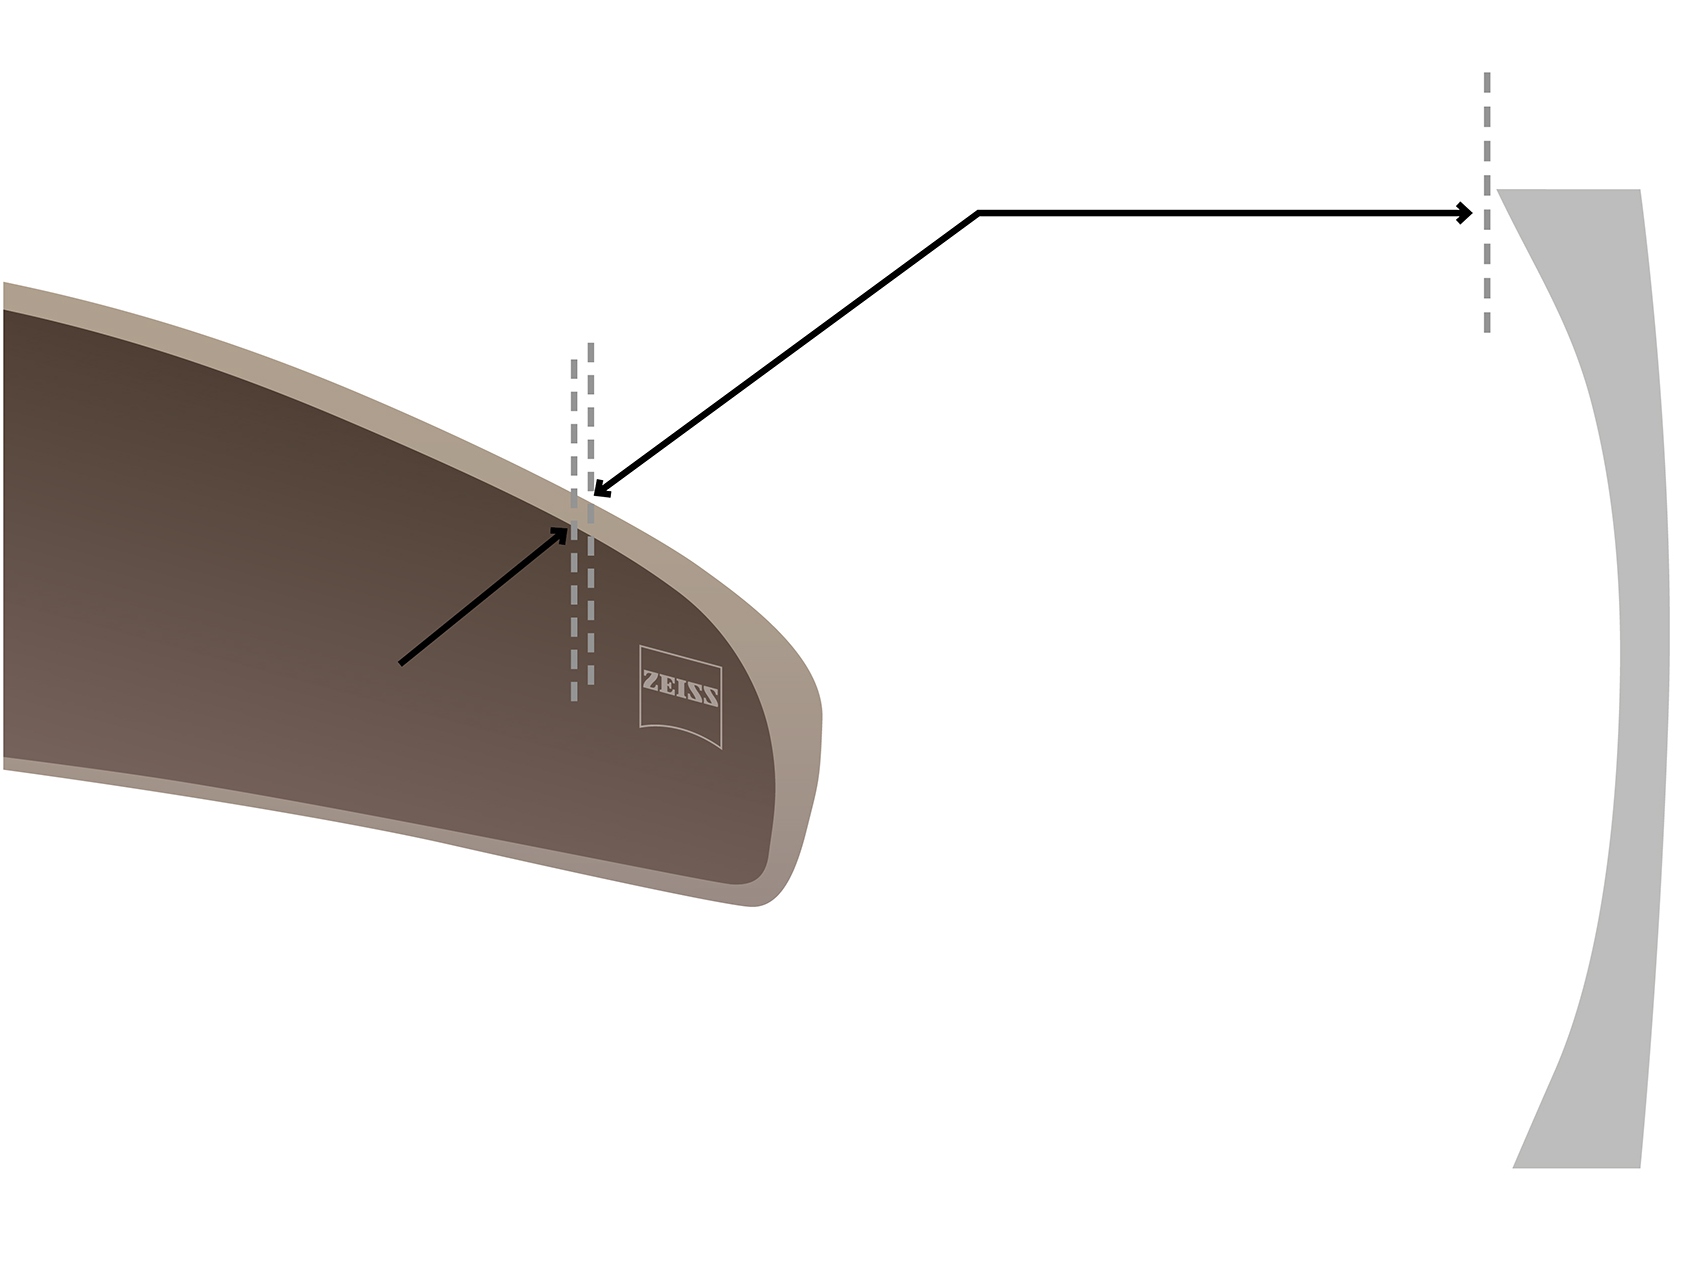 Vizualizace prohnutých brýlových čoček s blízkým pohledem na technologii Cosmetic Edge®. 